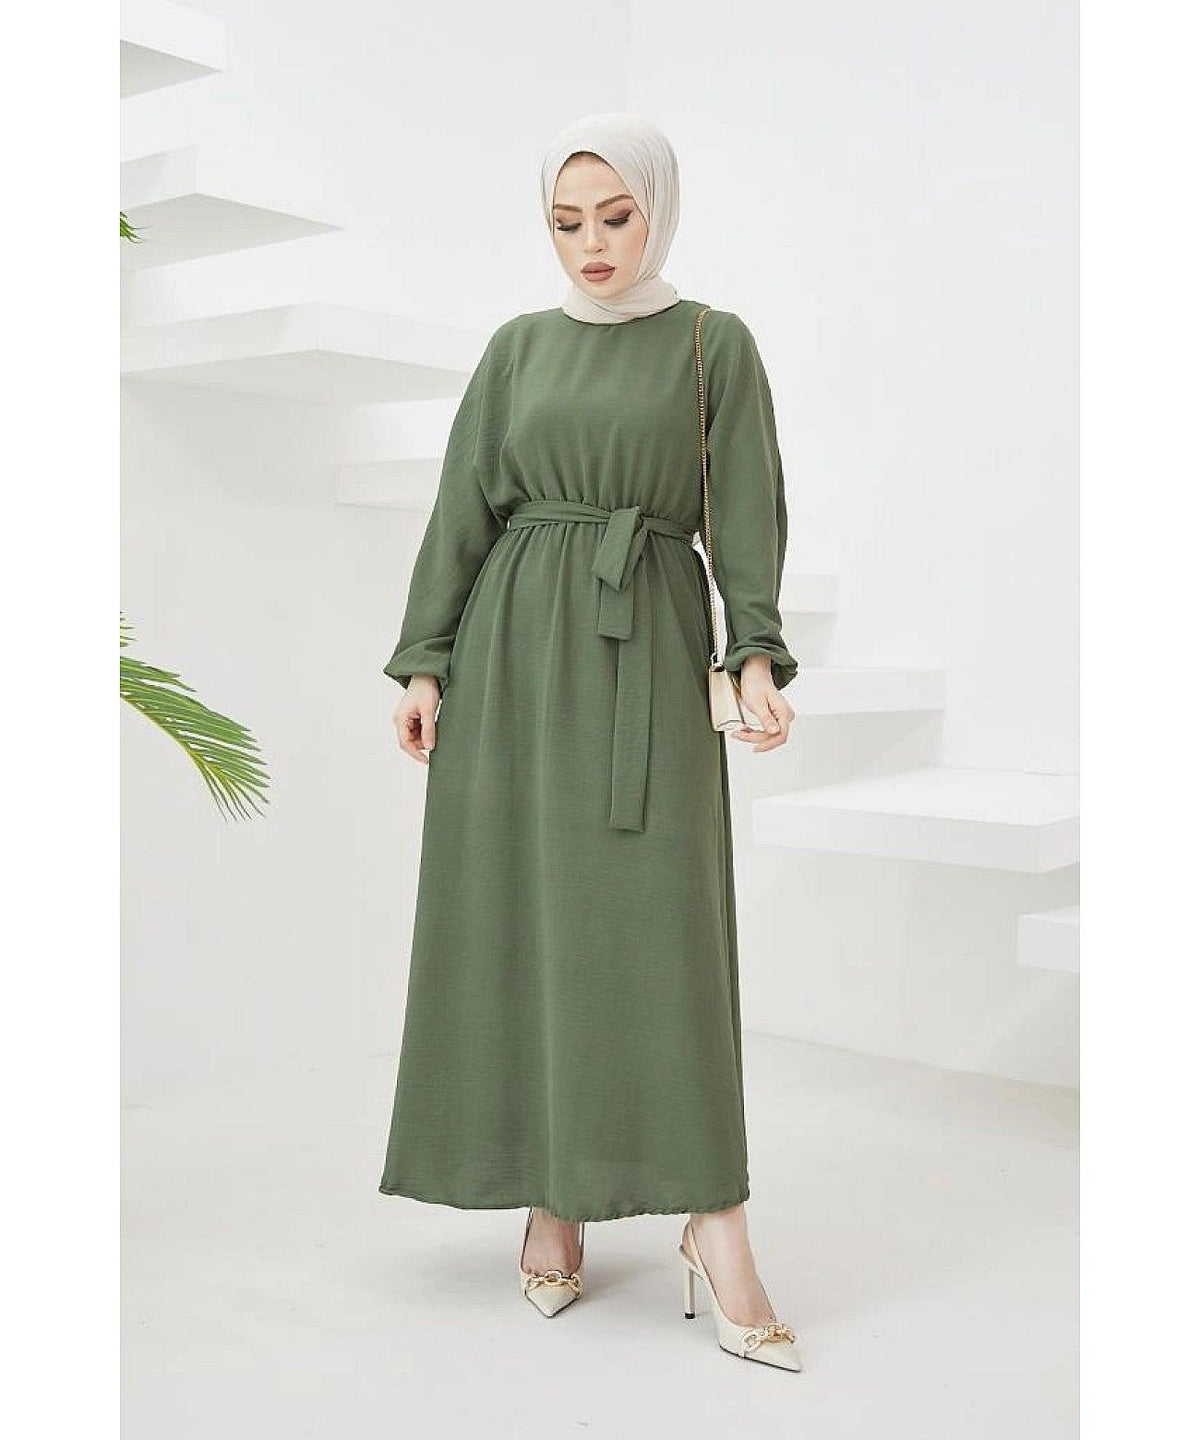 Modest Long Dubai Abaya Dress - Khaki